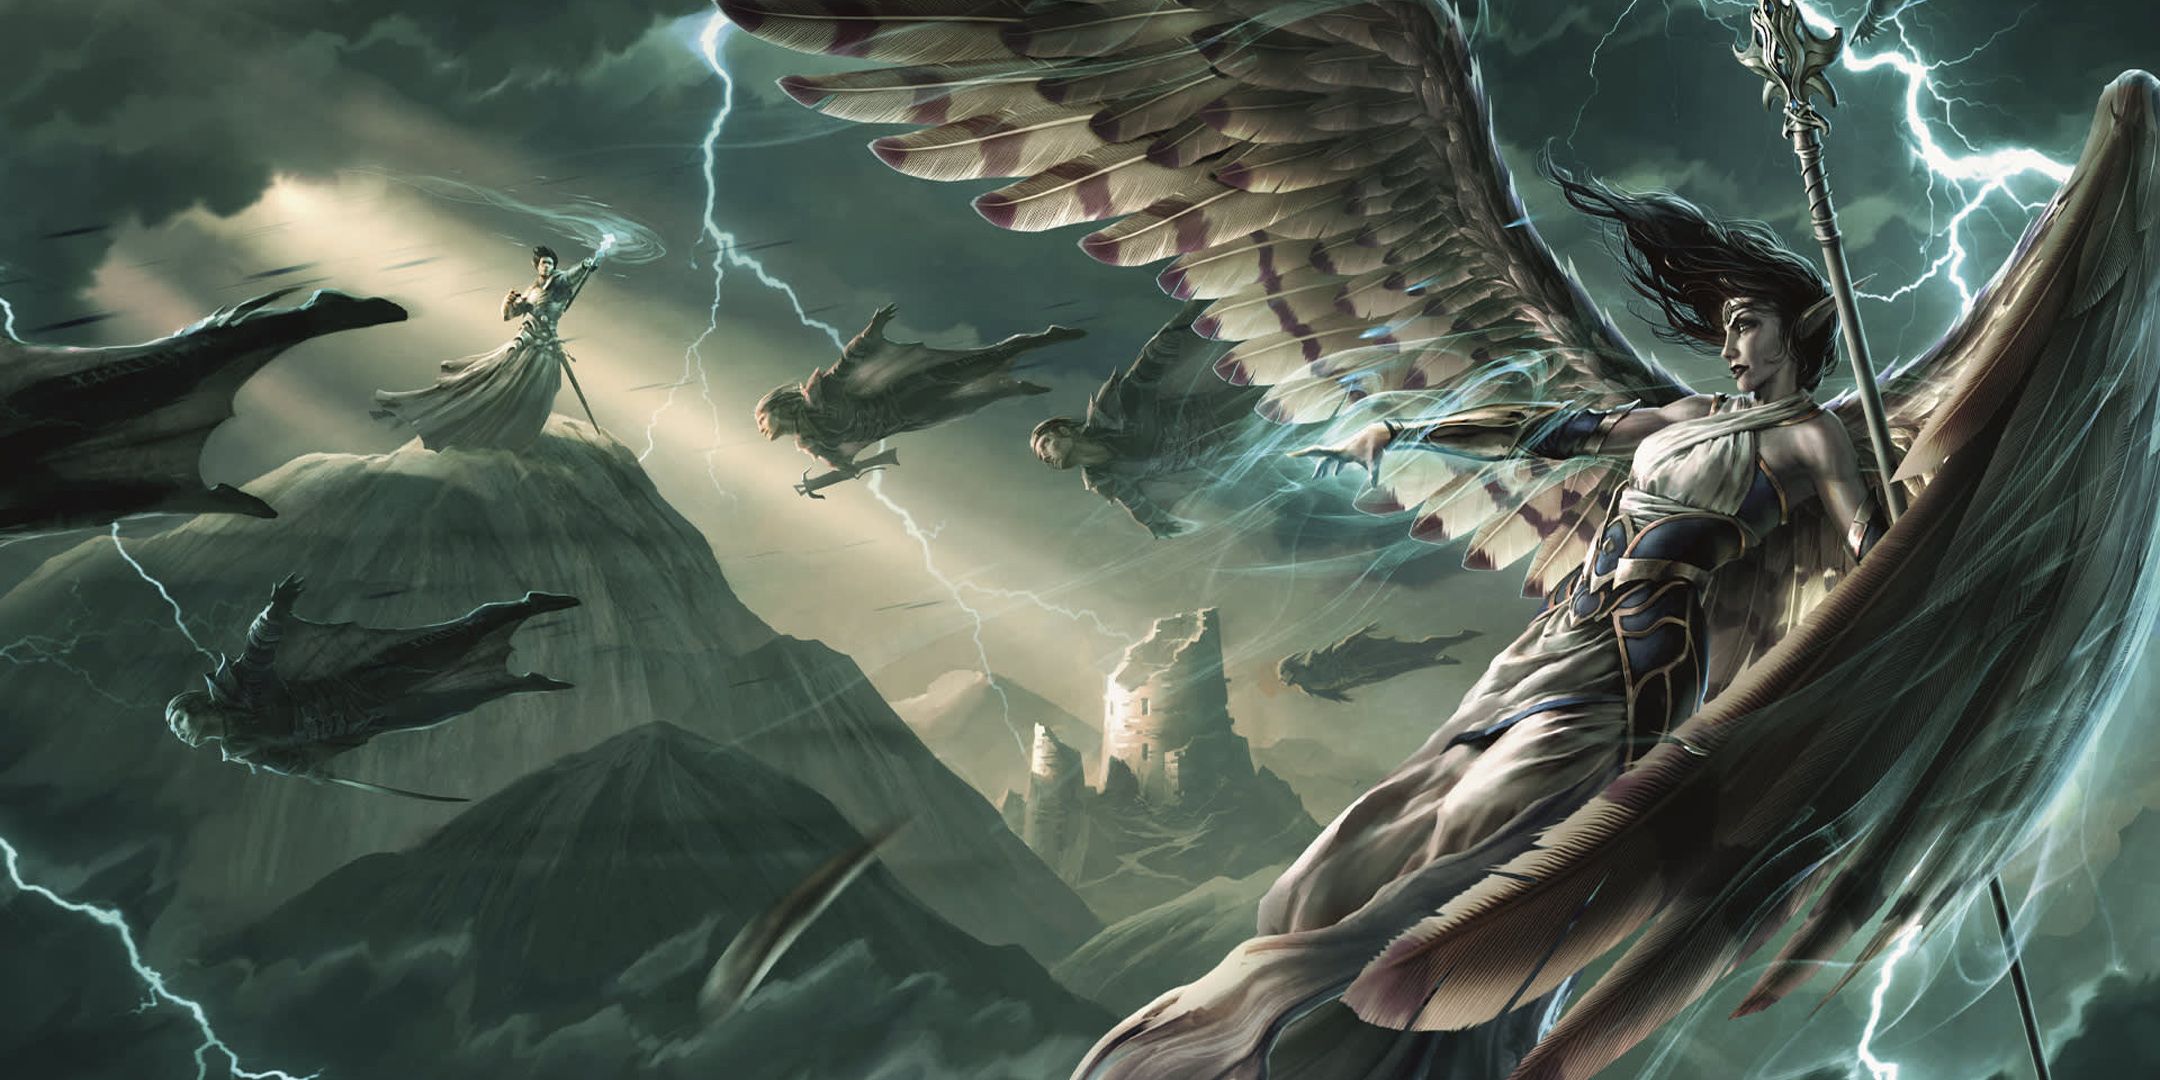 Arte da capa da campanha de D&D Princes of the Apocalypse mostrando uma luta em meio a uma tempestade.